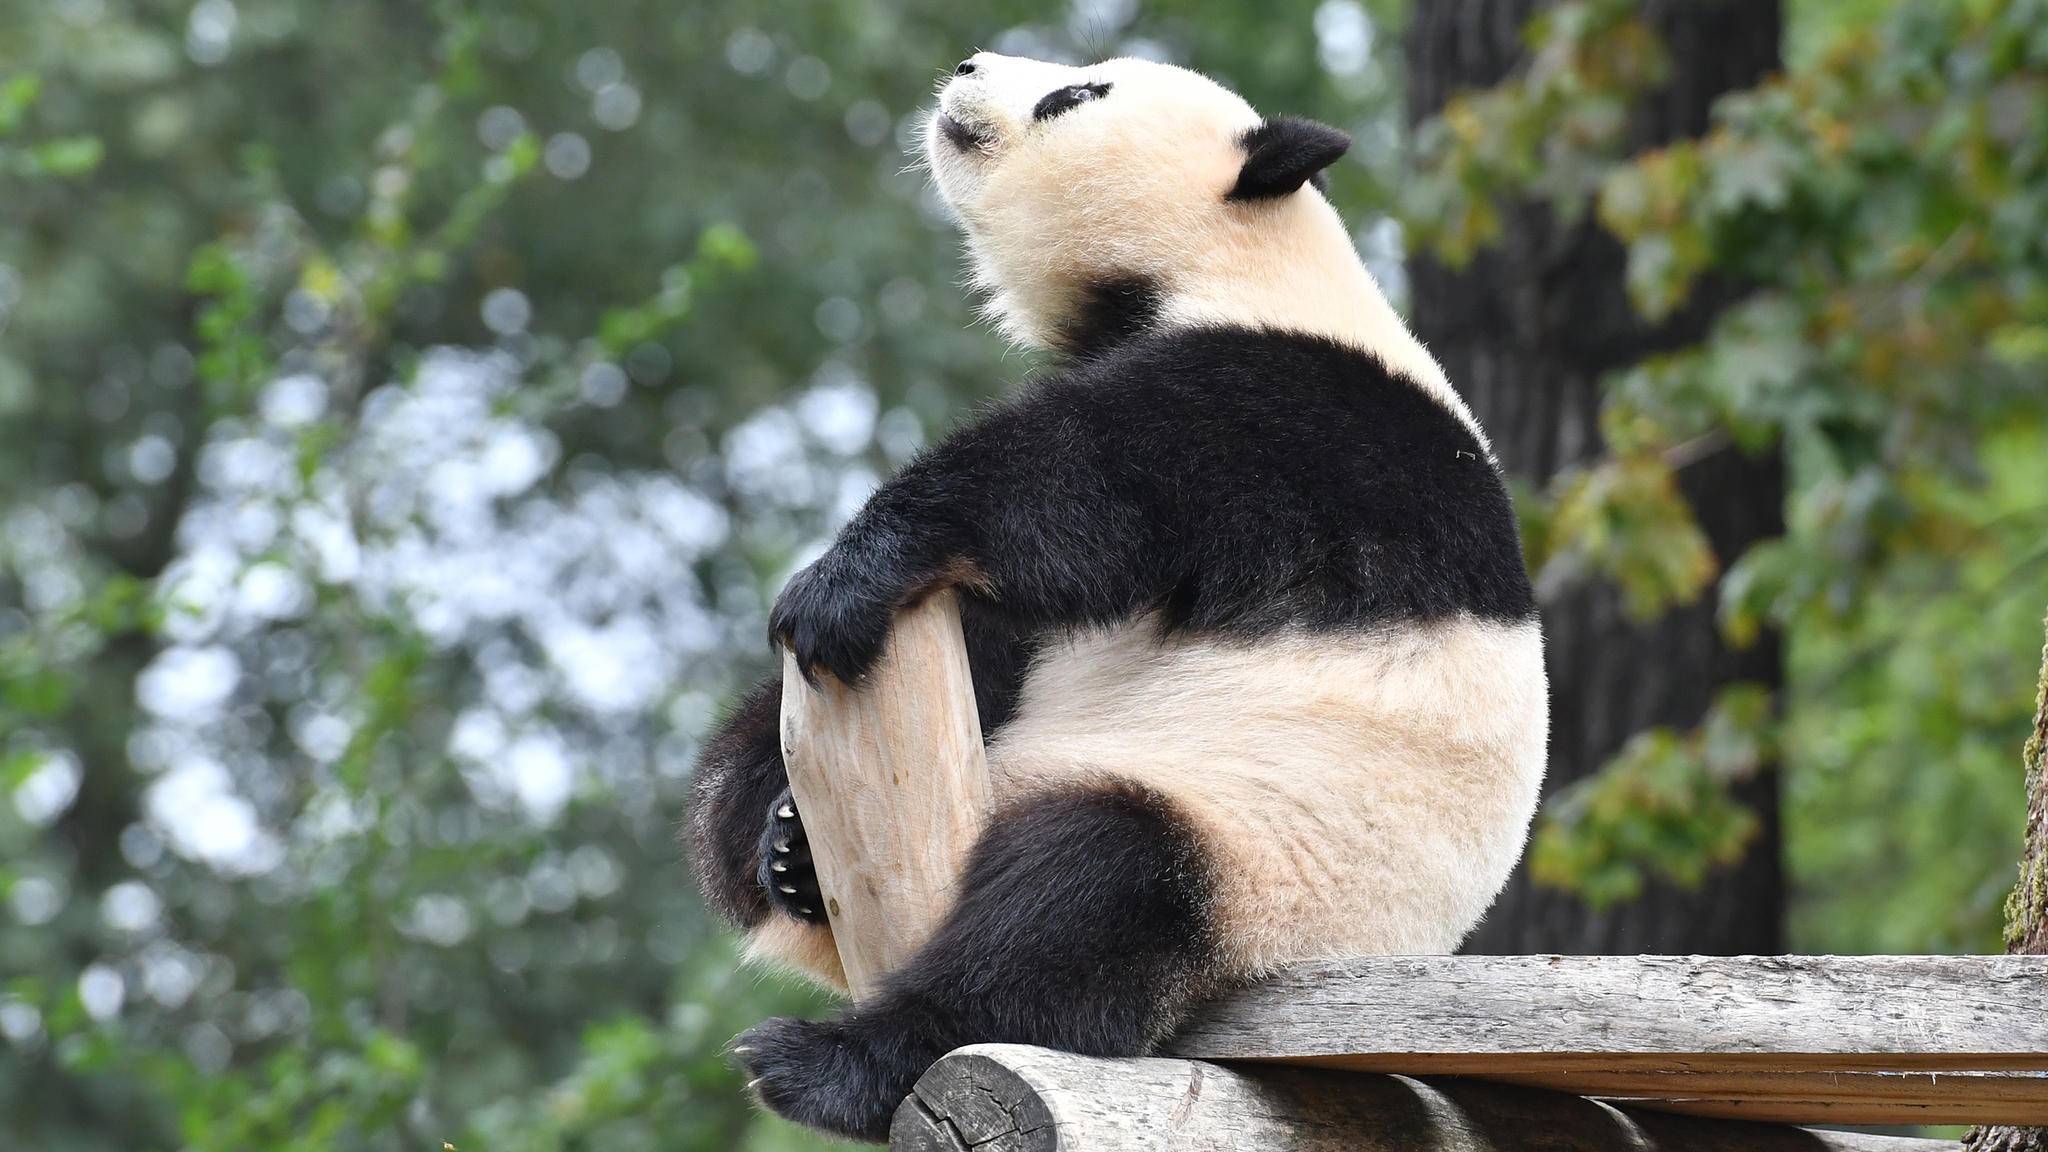 Apotheke Zoologischer Garten Genial Panda Meng Meng Im Berliner Zoo Bereitet sorgen